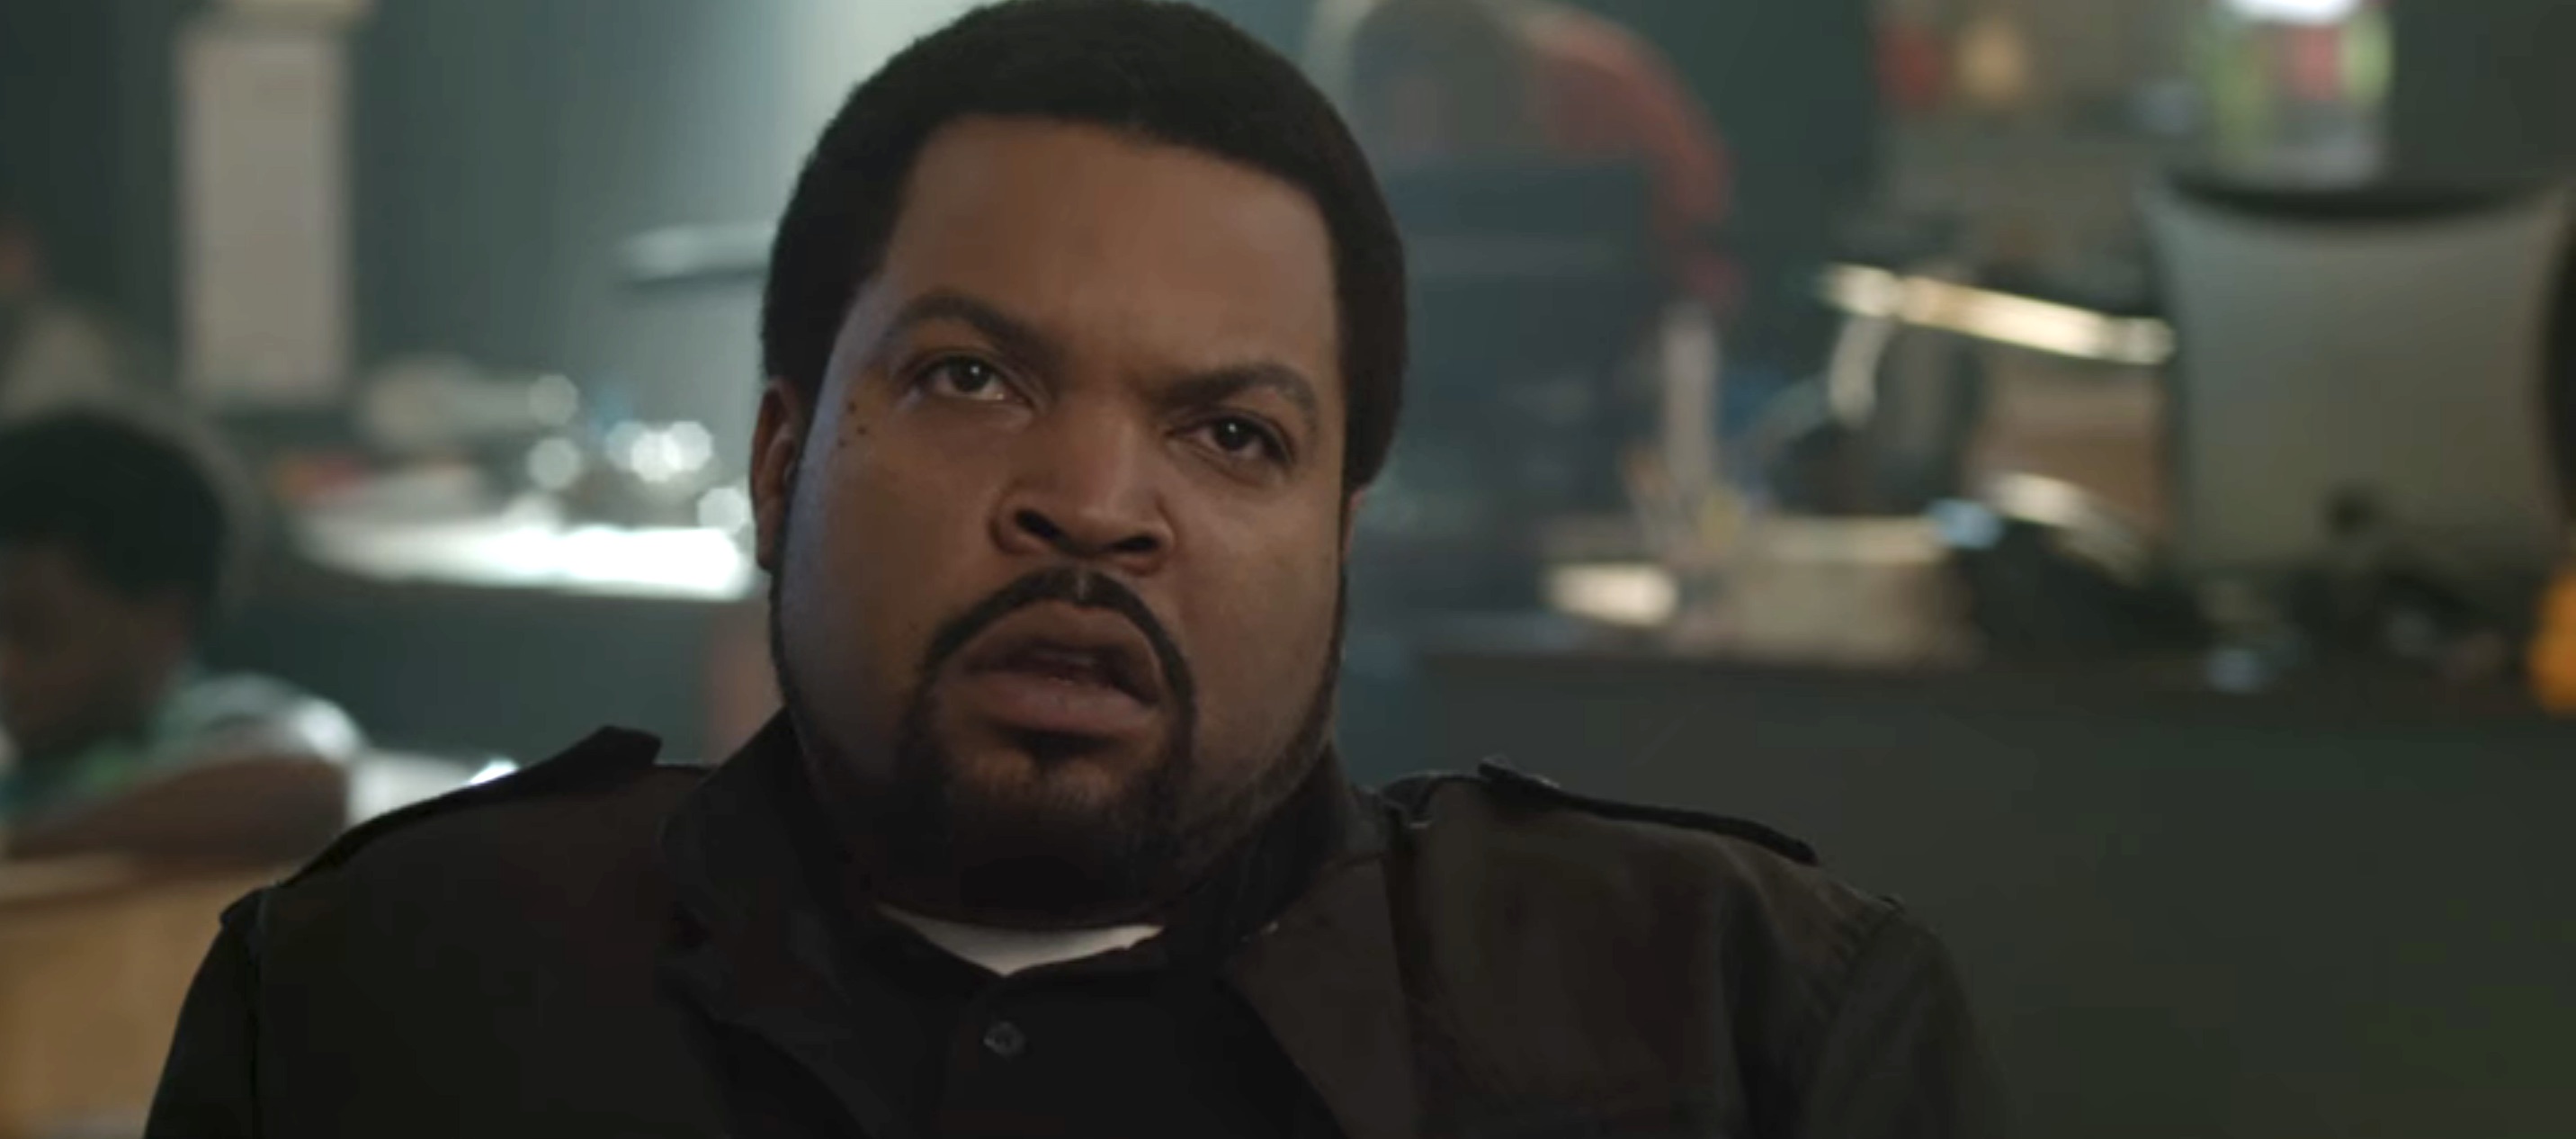 21 Jump Street - Ice Cube as Captain Dickson